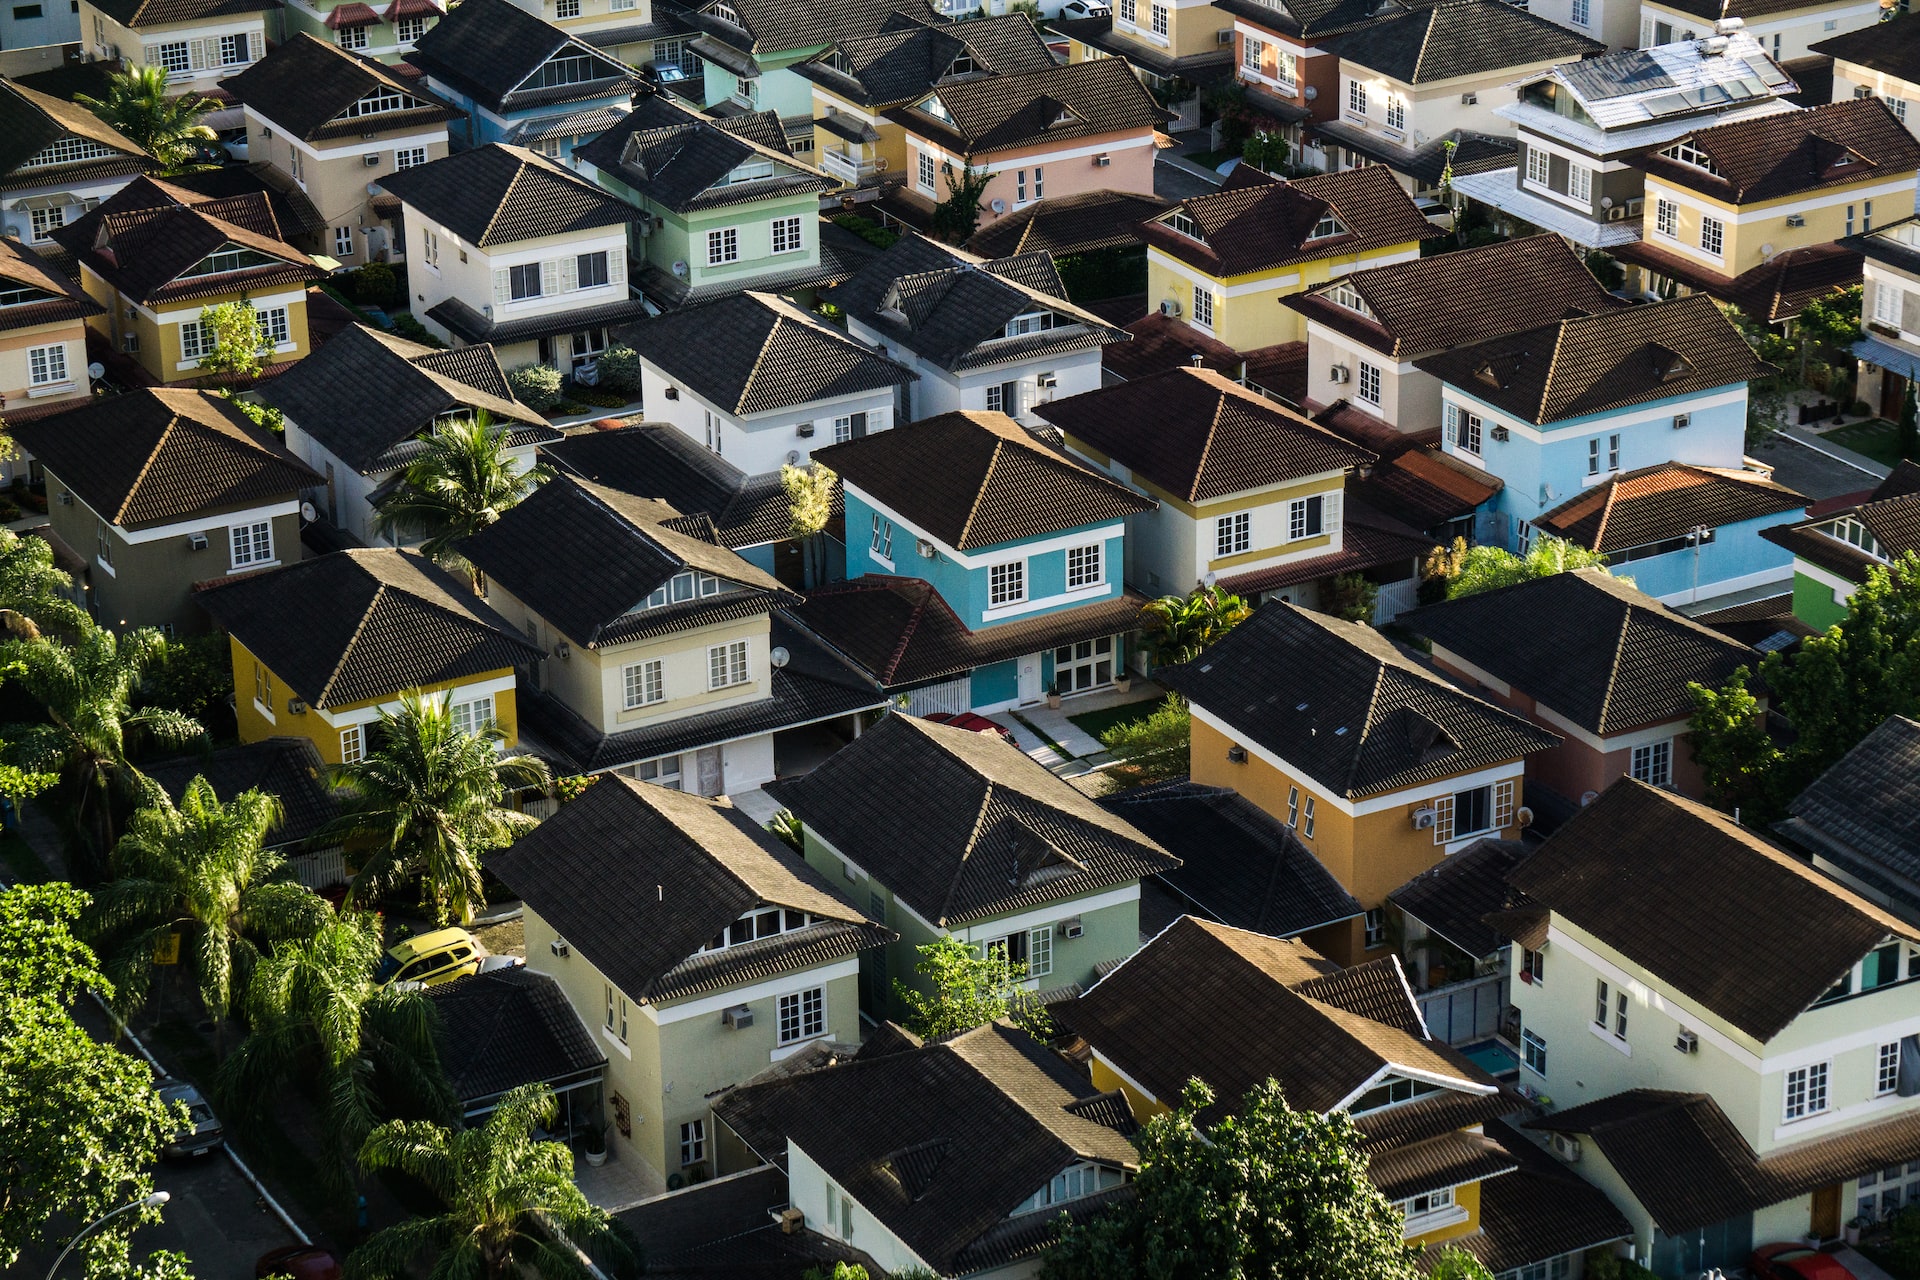 Blick aus der Luft auf eine Nachbarschaft von Häusern